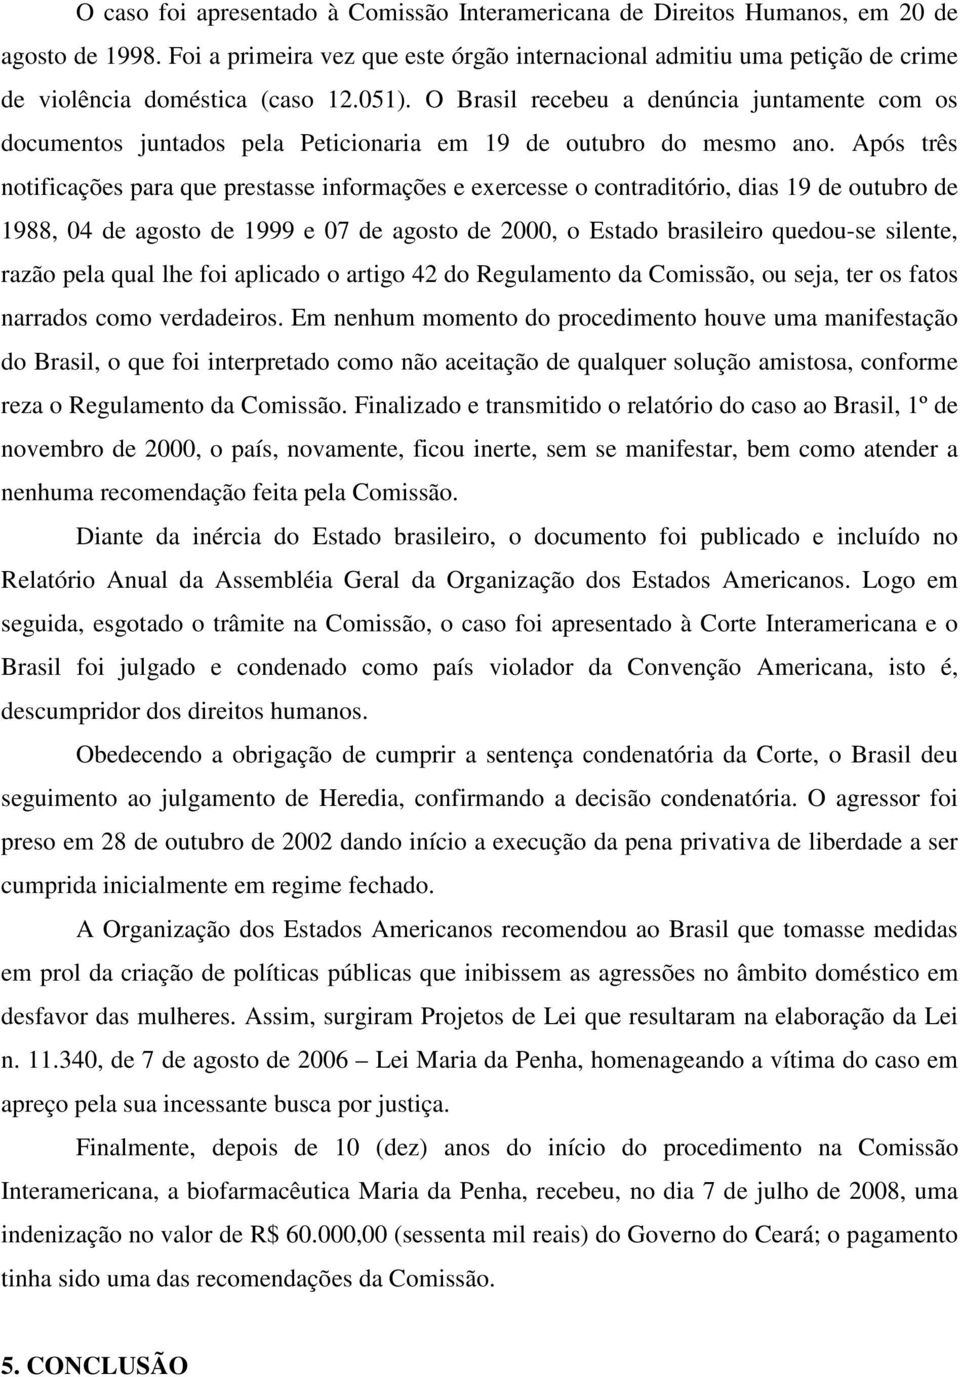 O Brasil recebeu a denúncia juntamente com os documentos juntados pela Peticionaria em 19 de outubro do mesmo ano.